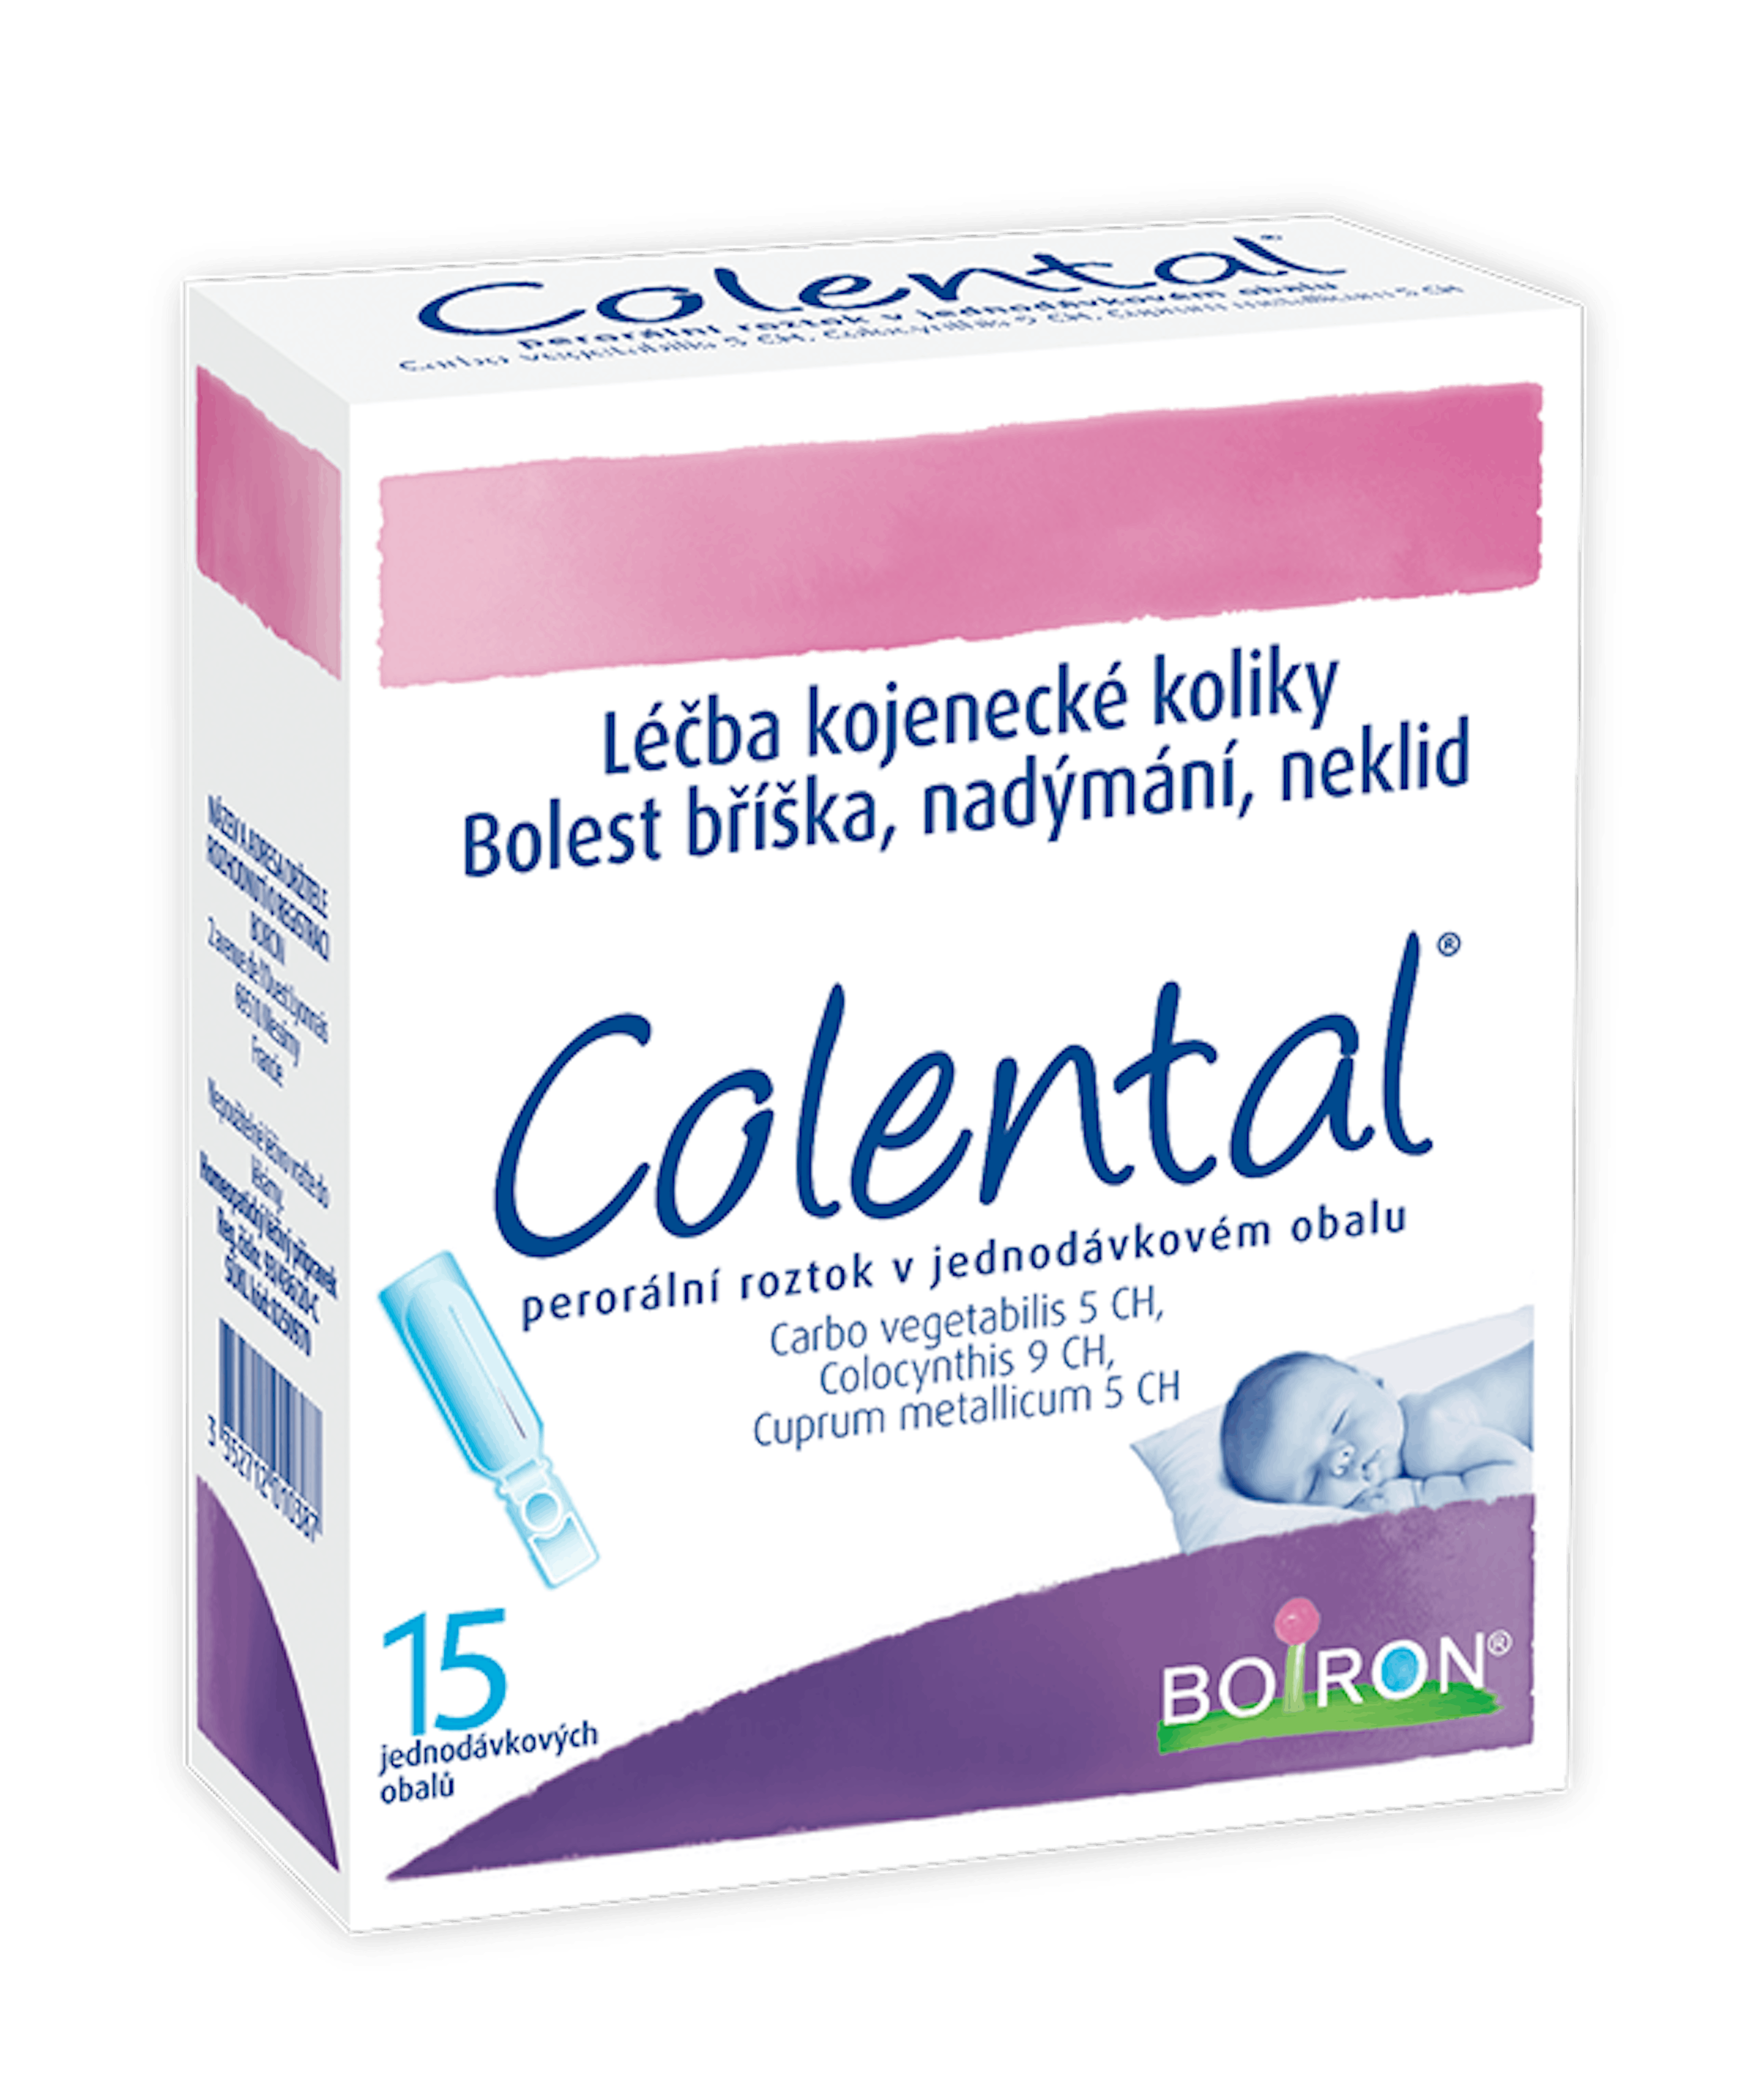 Colental,  homeopatický léčivý přípravek, kojenecké koliky, novorozenecká kolika, bolesti bříška, nadýmání, neklid.